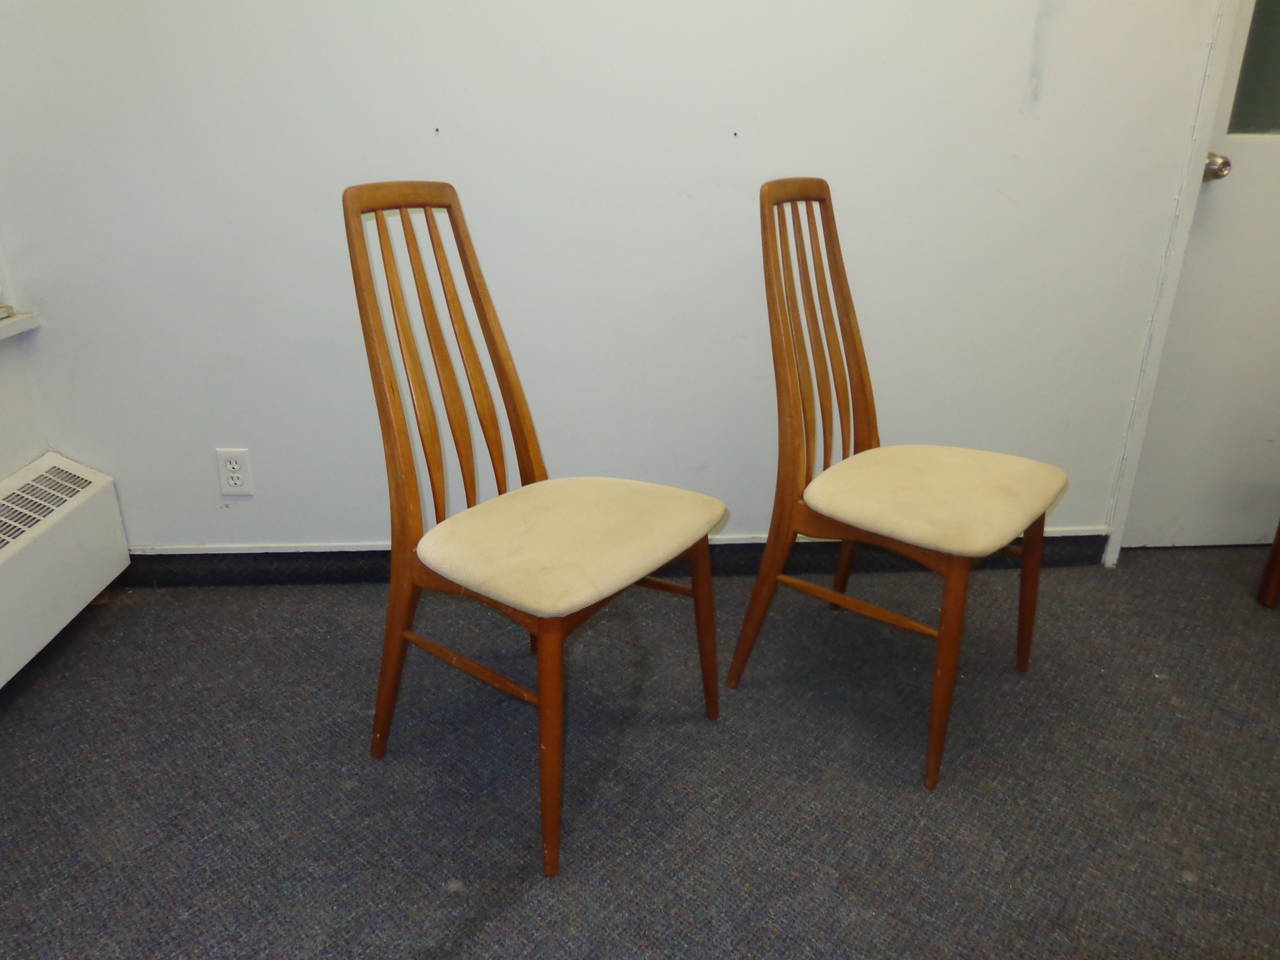 niels koefoed chairs